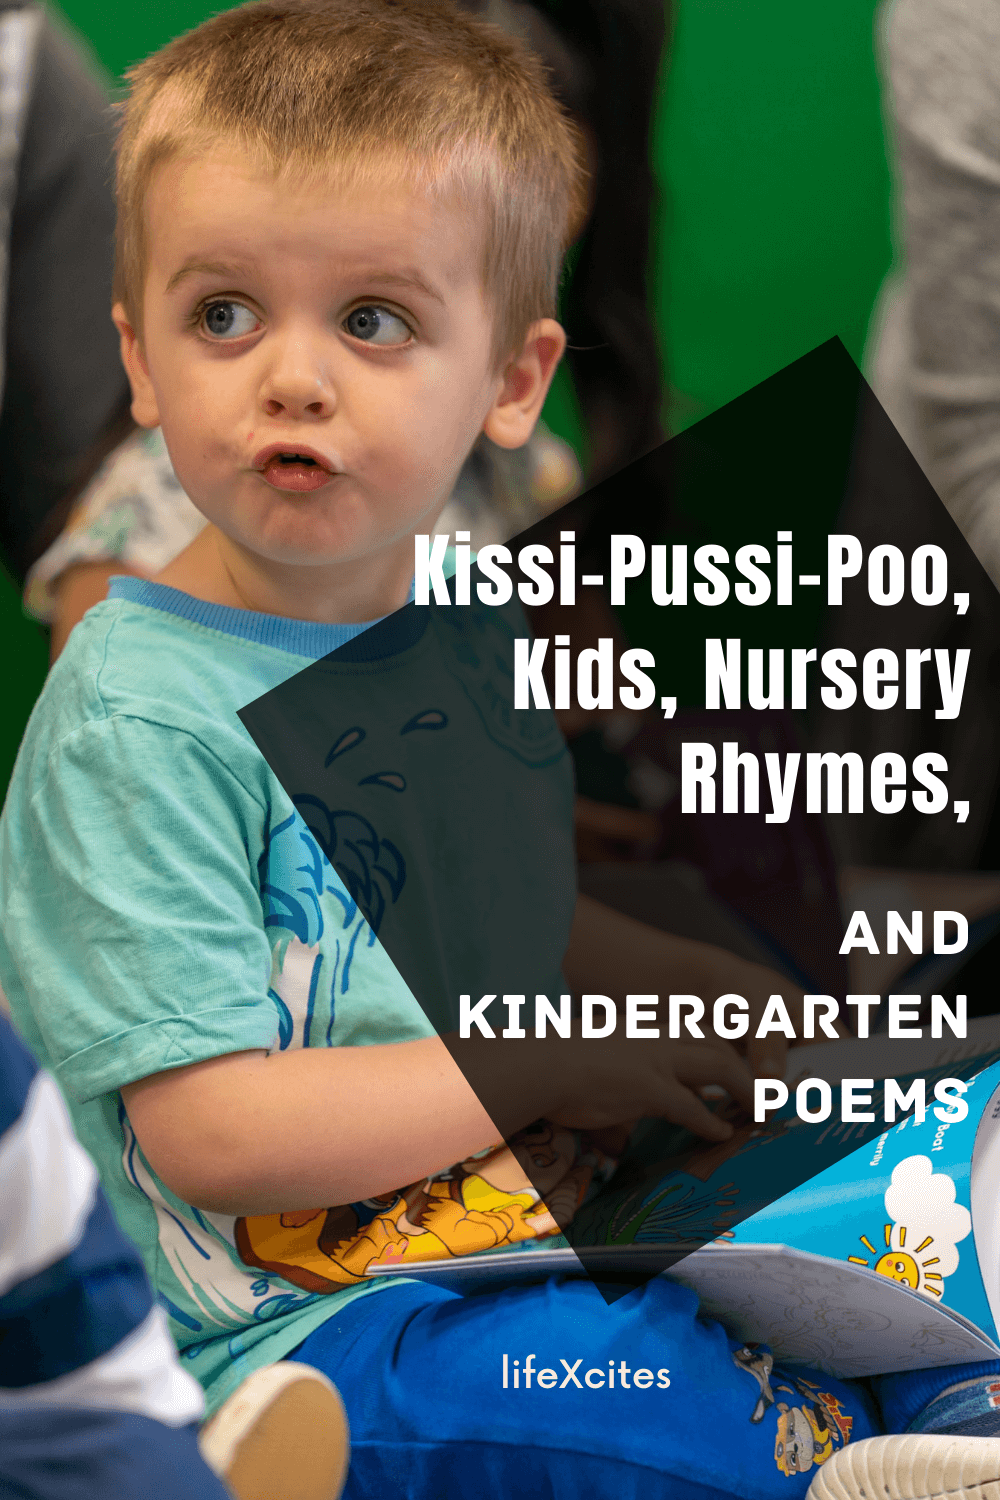 Nursery Rhymes, and Kindergarten Poems